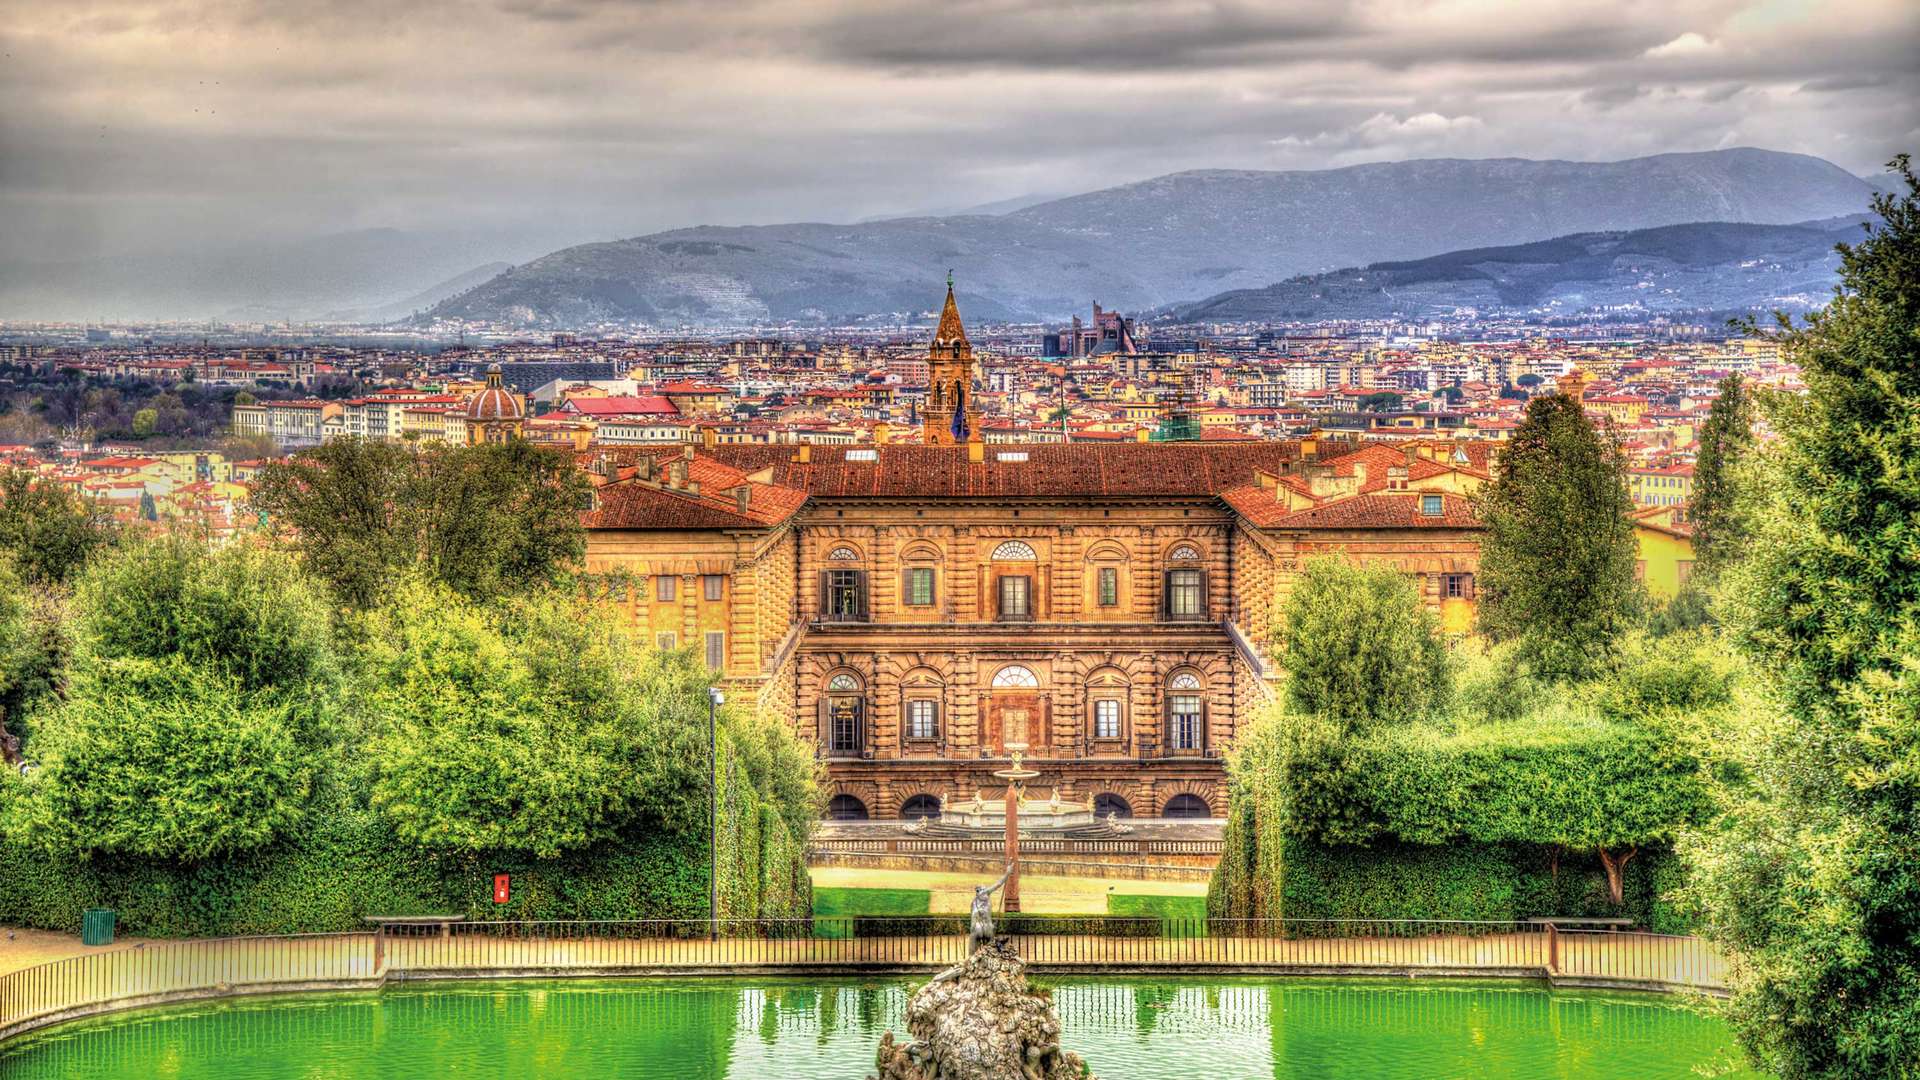 Pitti Palace, Palazzo Pitti, Florence, Tuscany, Italy 